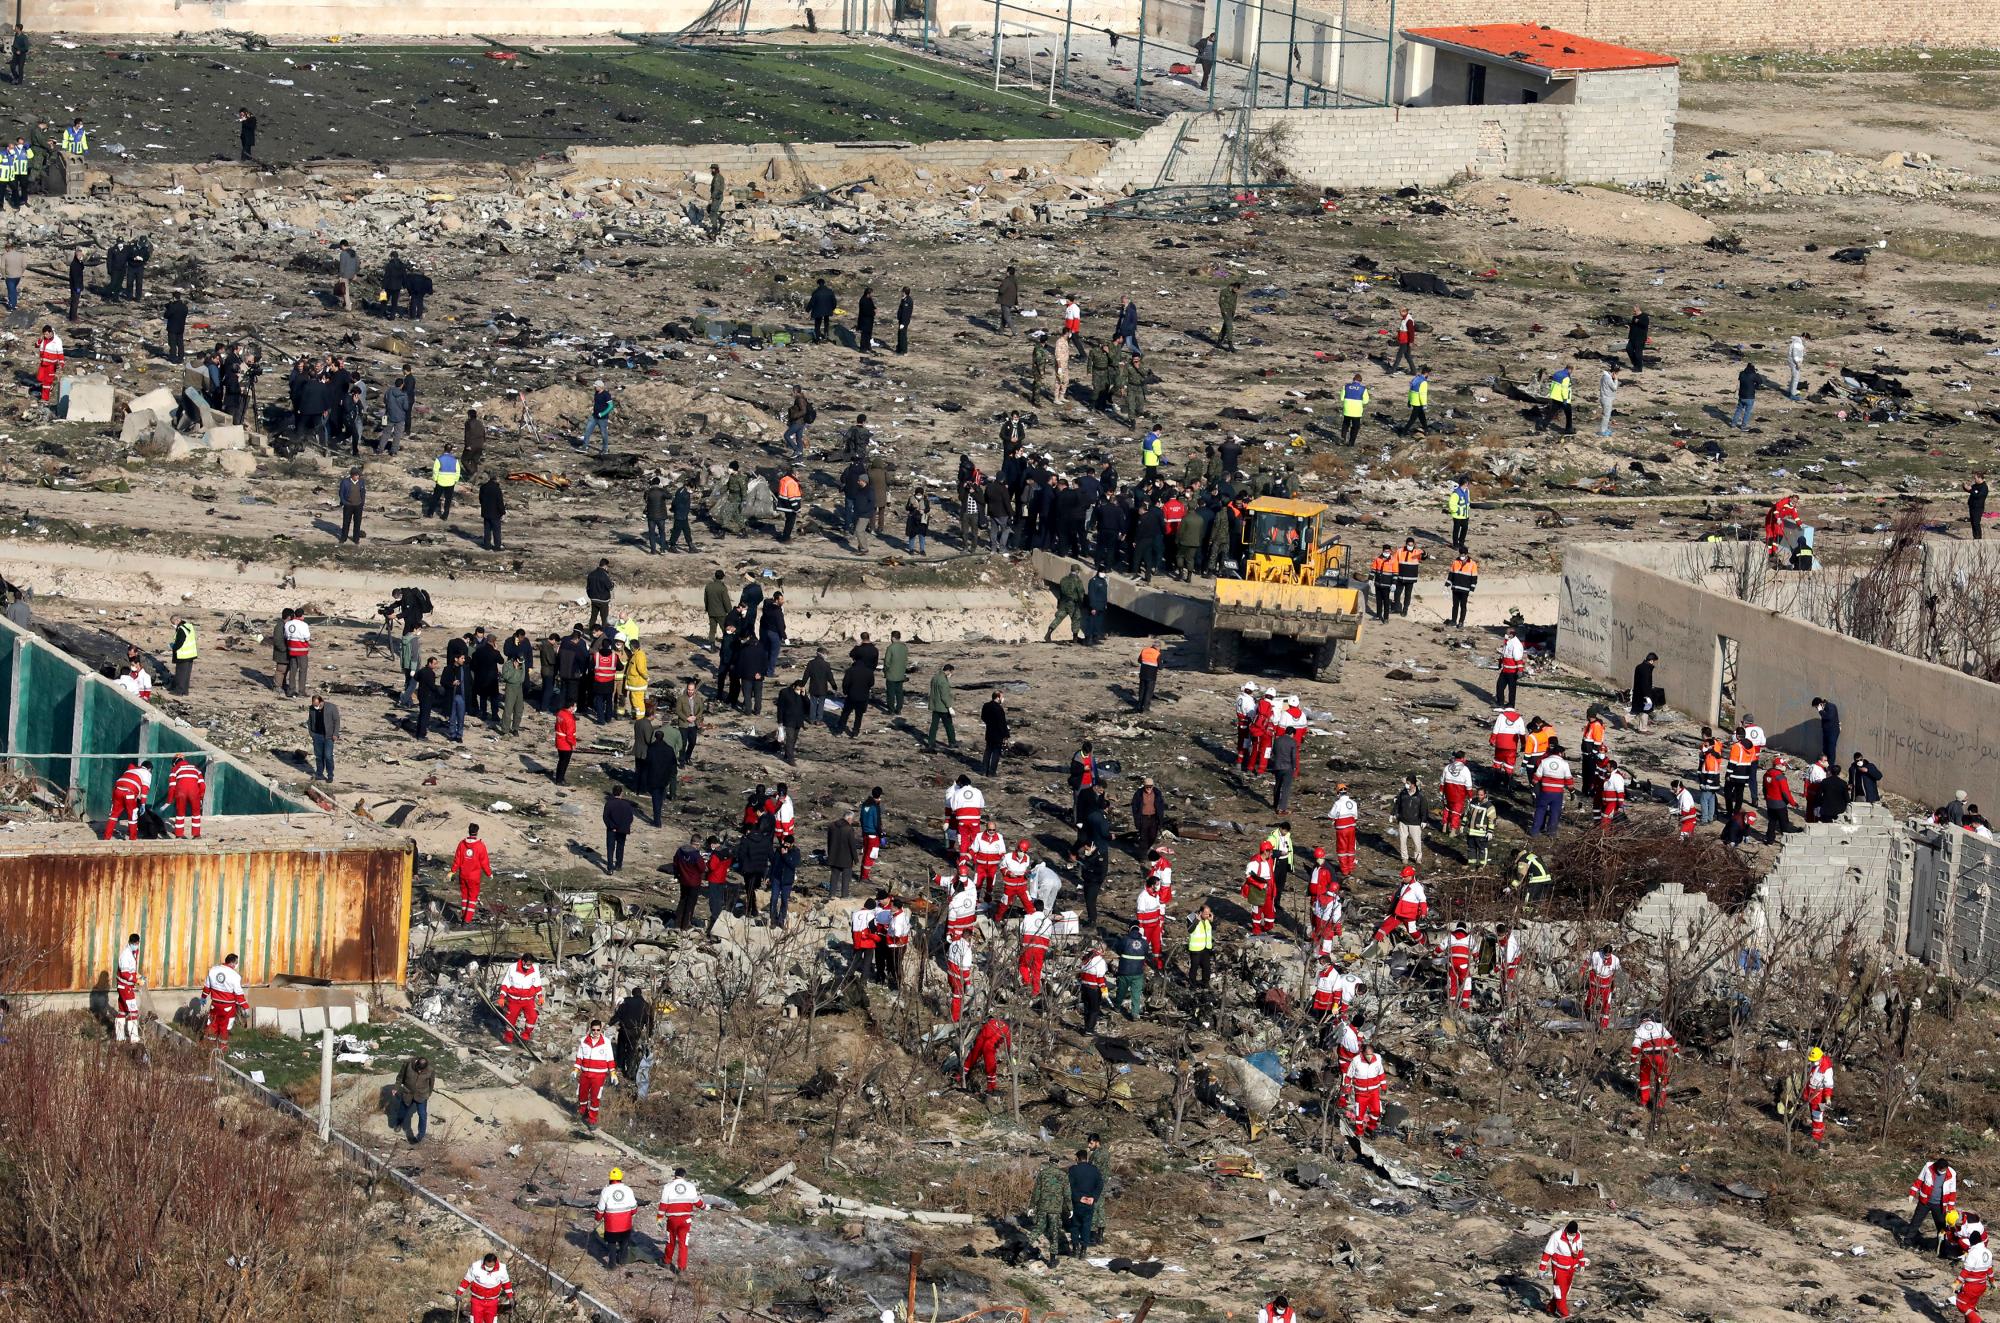 Los equipos de rescate buscan en la escena donde un avión ucraniano se estrelló en Shahedshahr, al suroeste de la capital, Teherán, Irán, el miércoles 8 de enero de 2020. Un avión de pasajeros ucraniano que transportaba a 176 personas se estrelló el miércoles, pocos minutos después de despegar de la capital de Irán. aeropuerto, convirtiendo tierras de cultivo en las afueras de Teherán en campos de escombros en llamas y matando a todos a bordo. 